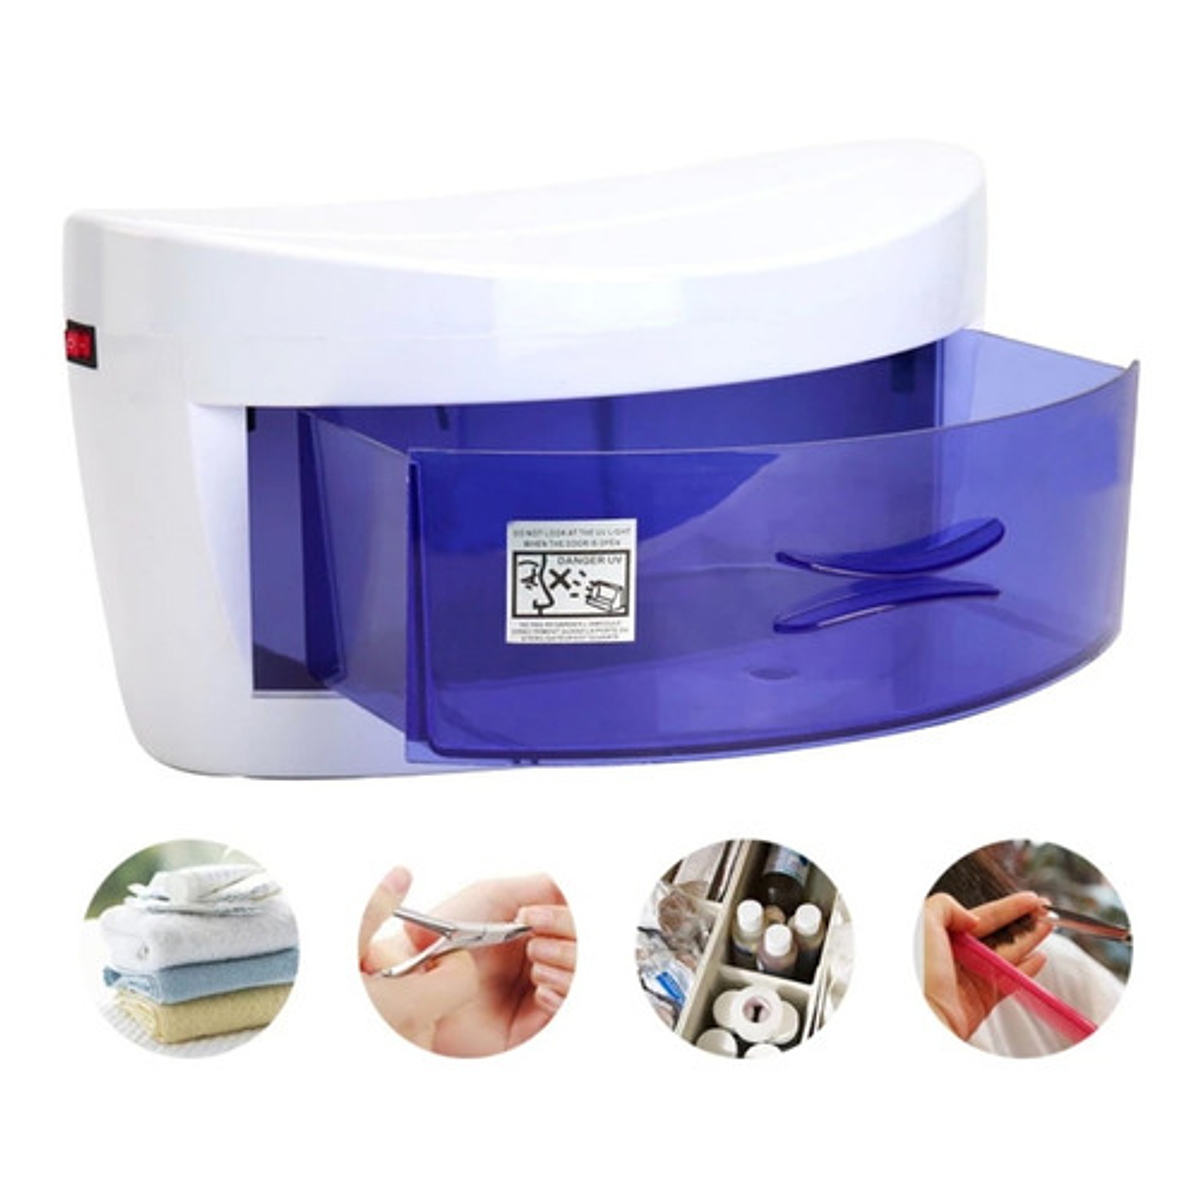 Esterilizador UV de desinfección para herramientas estética -  Esterilización UV